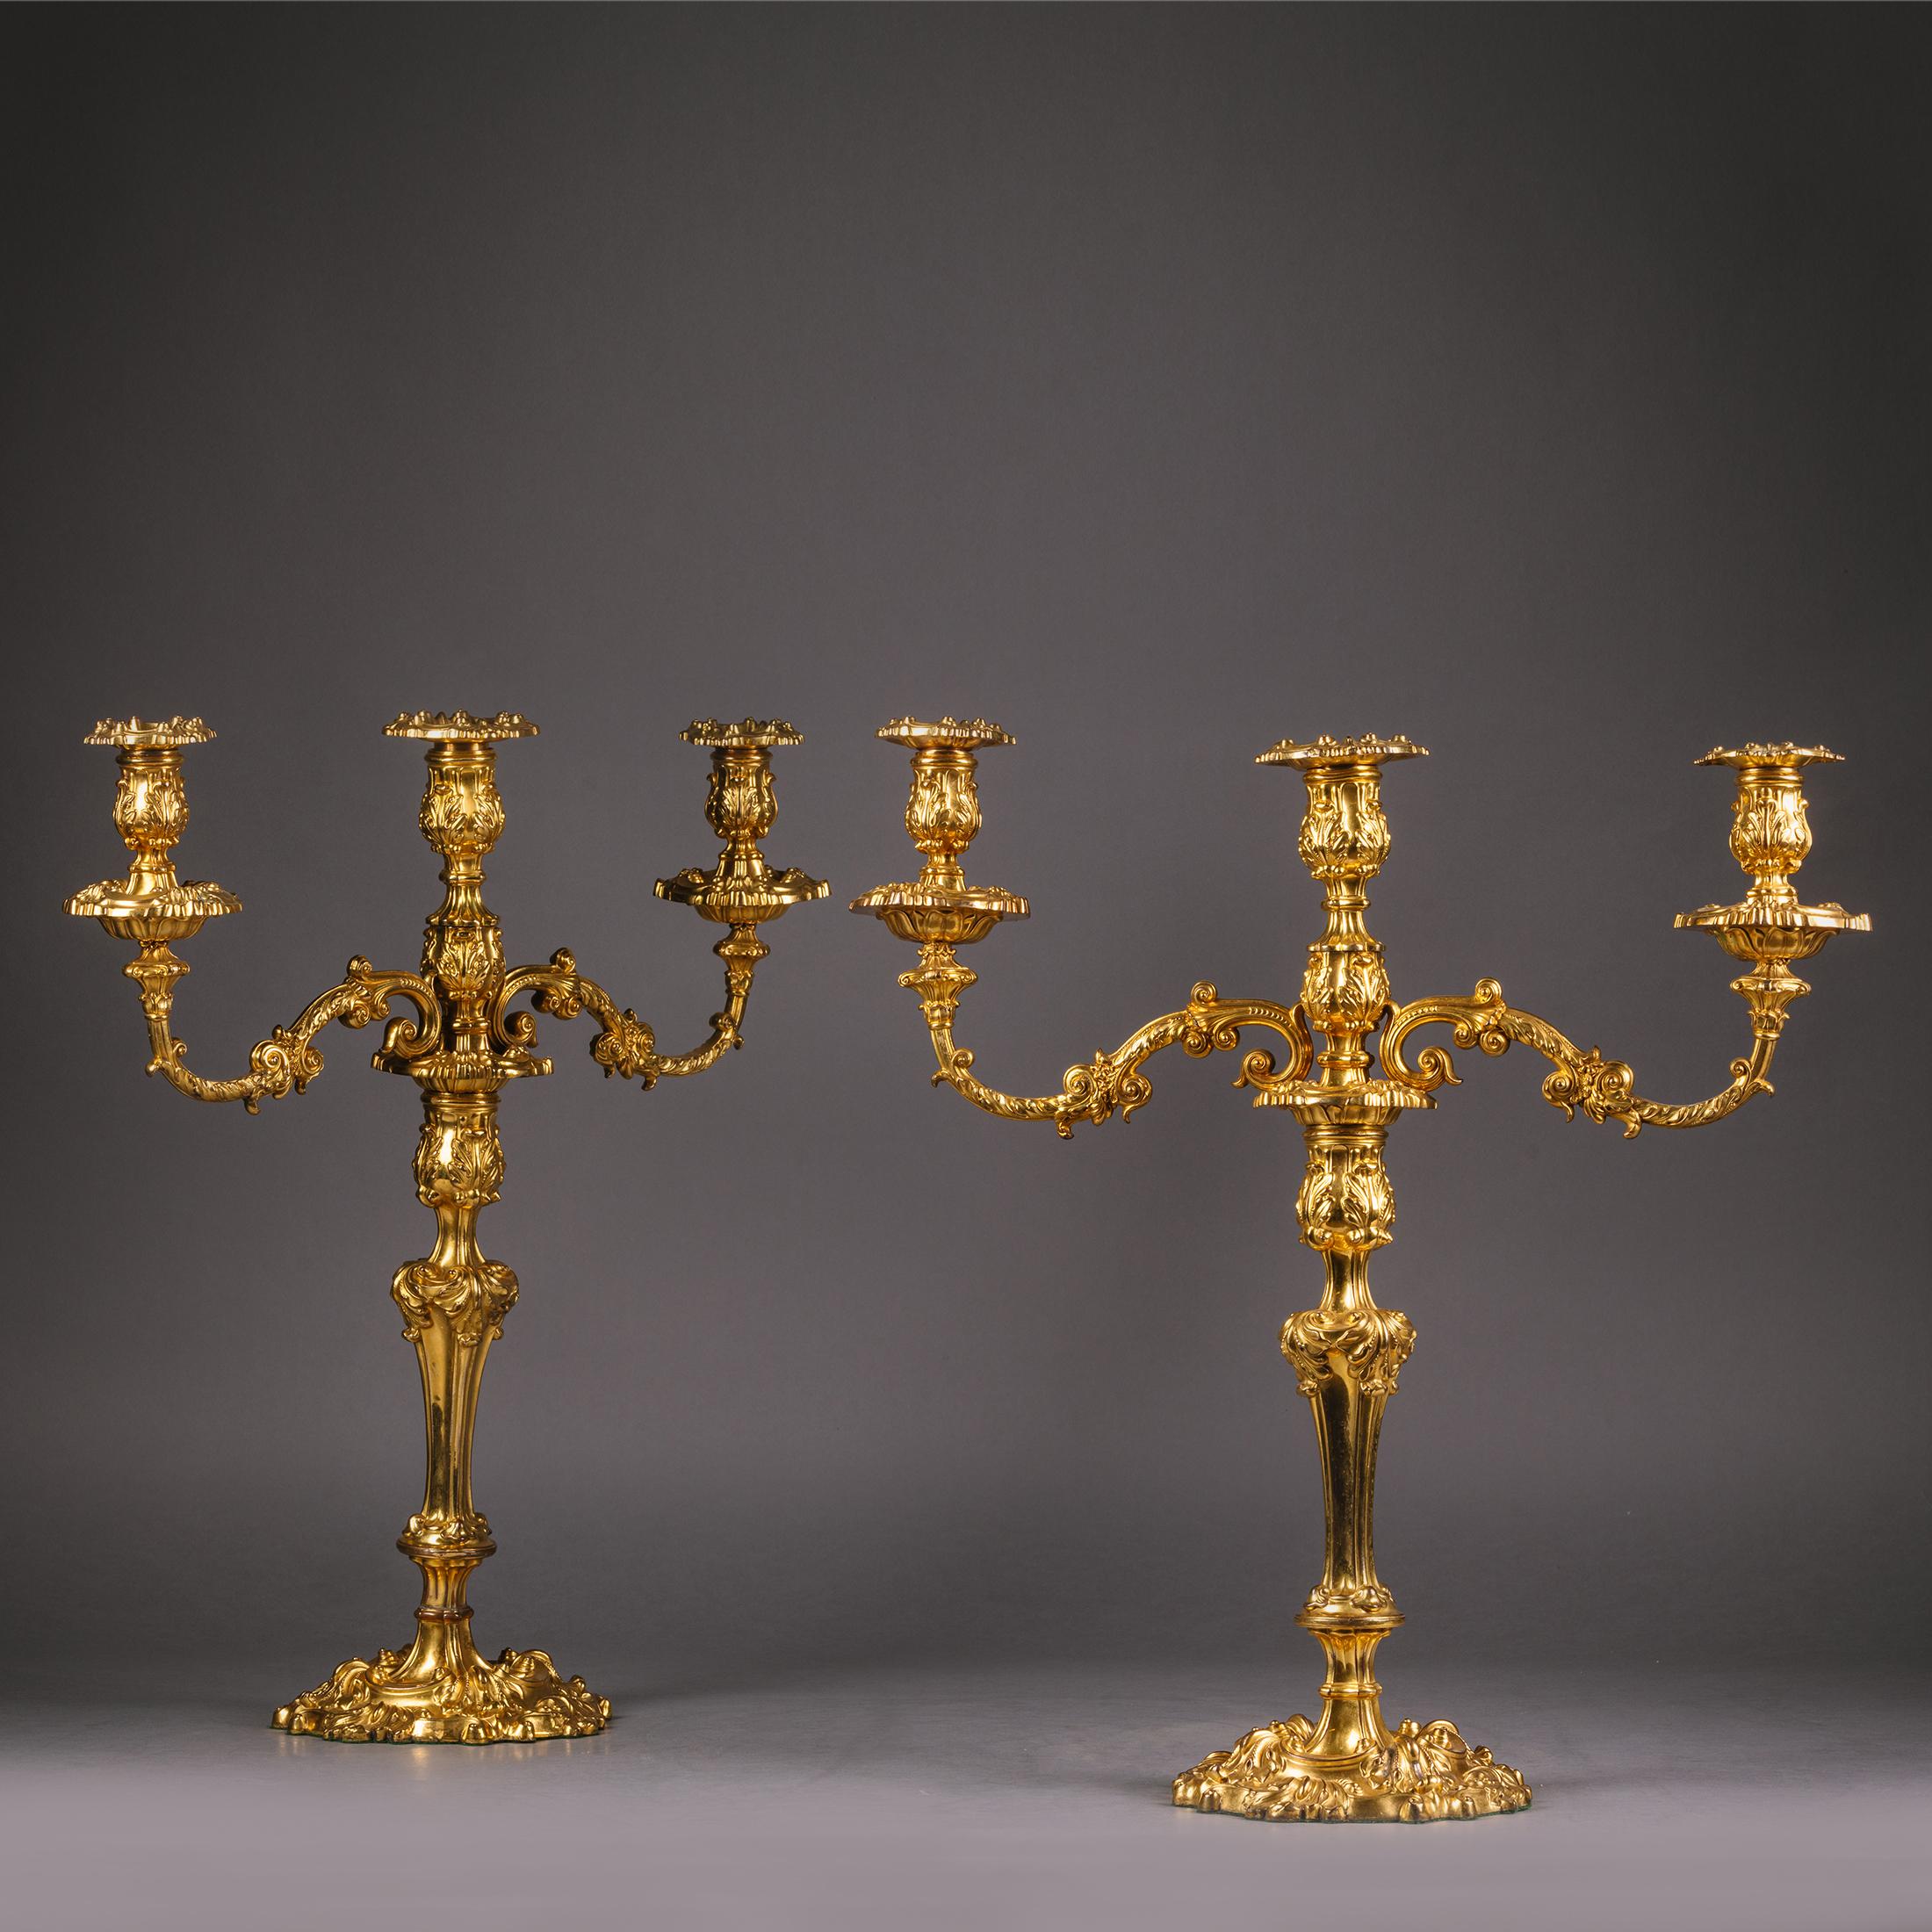 Paire de candélabres à trois lumières en ormolu de style Louis XV et de style néo-rococo.

Finement moulée dans le style néo-rococo, cette paire de candélabres anglais a des tiges balustres et des branches enroulées d'acanthe se terminant par des